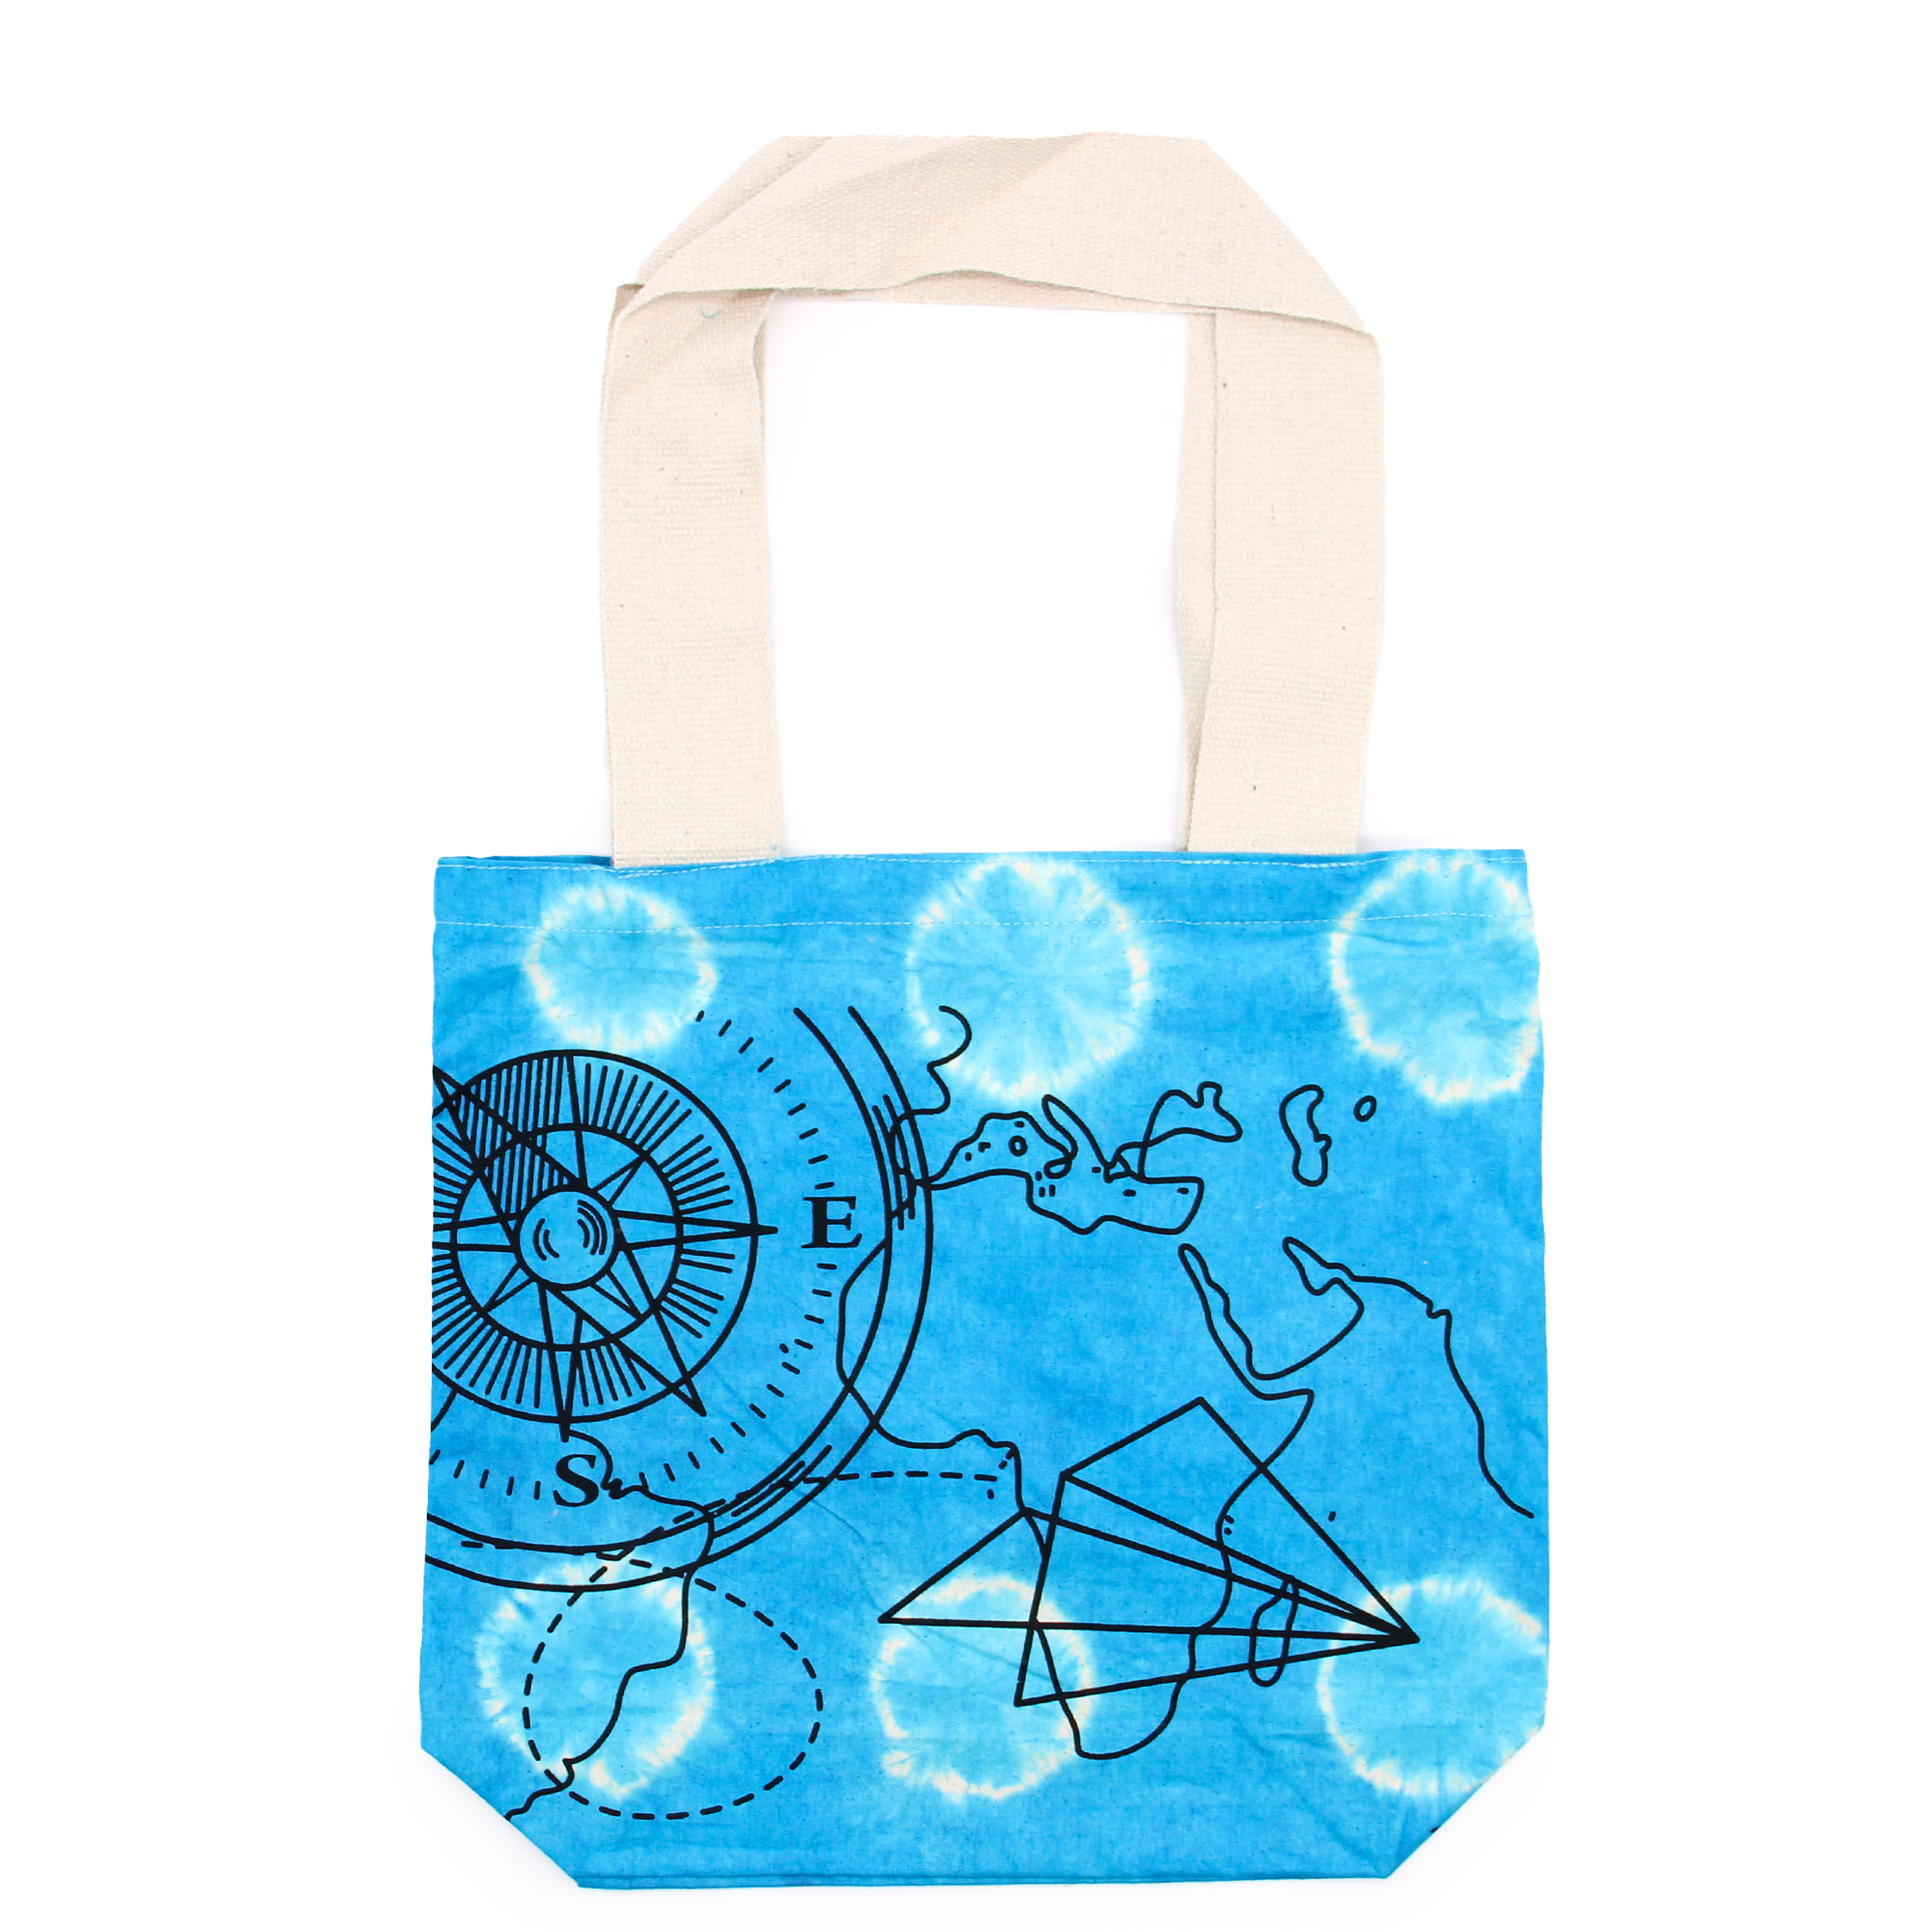 Tye-Dye Cotton Bag (6oz) - 38x42x12cm - Compass - Blue - Natural Handle